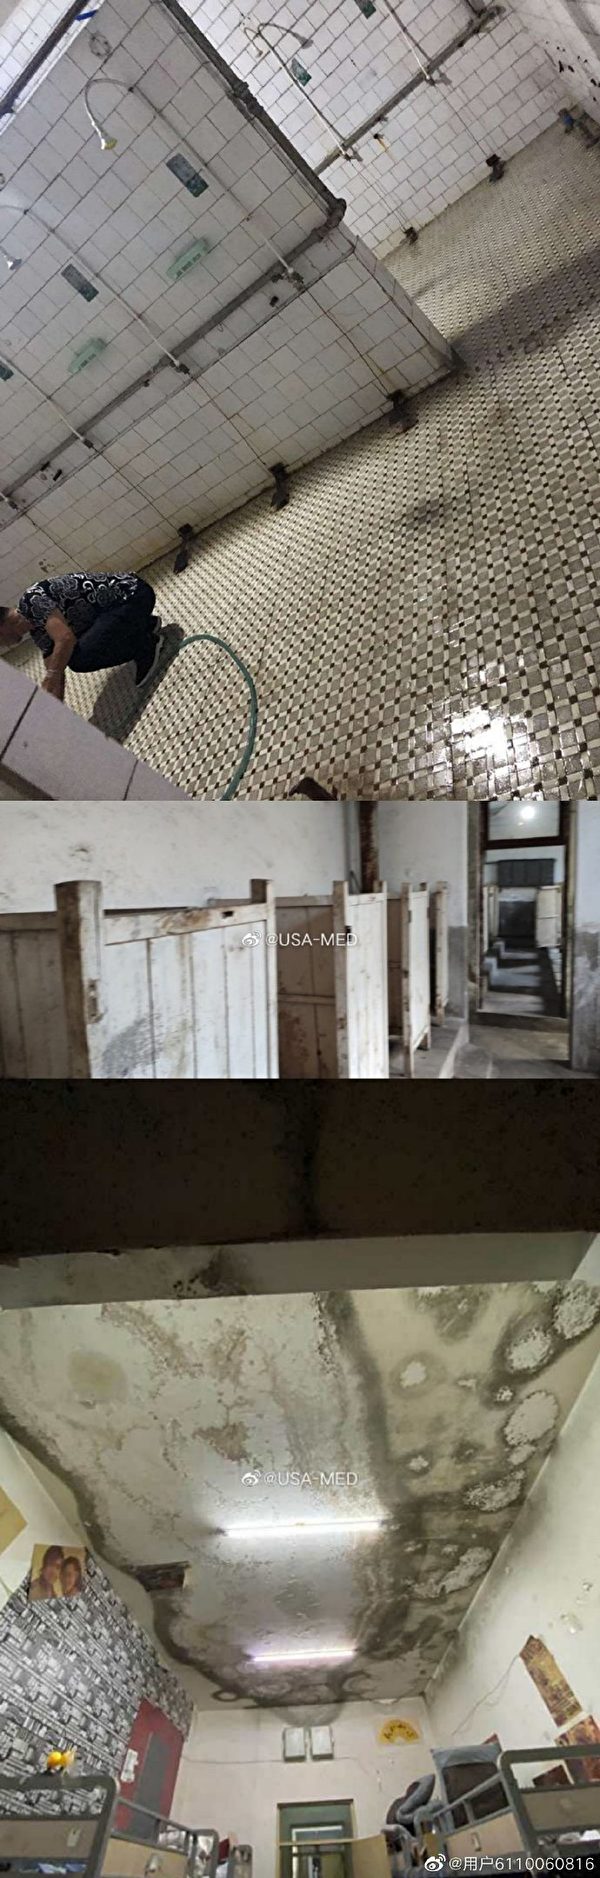 网友爆料南校区的浴室、厕所和宿舍图片。（微博图片）